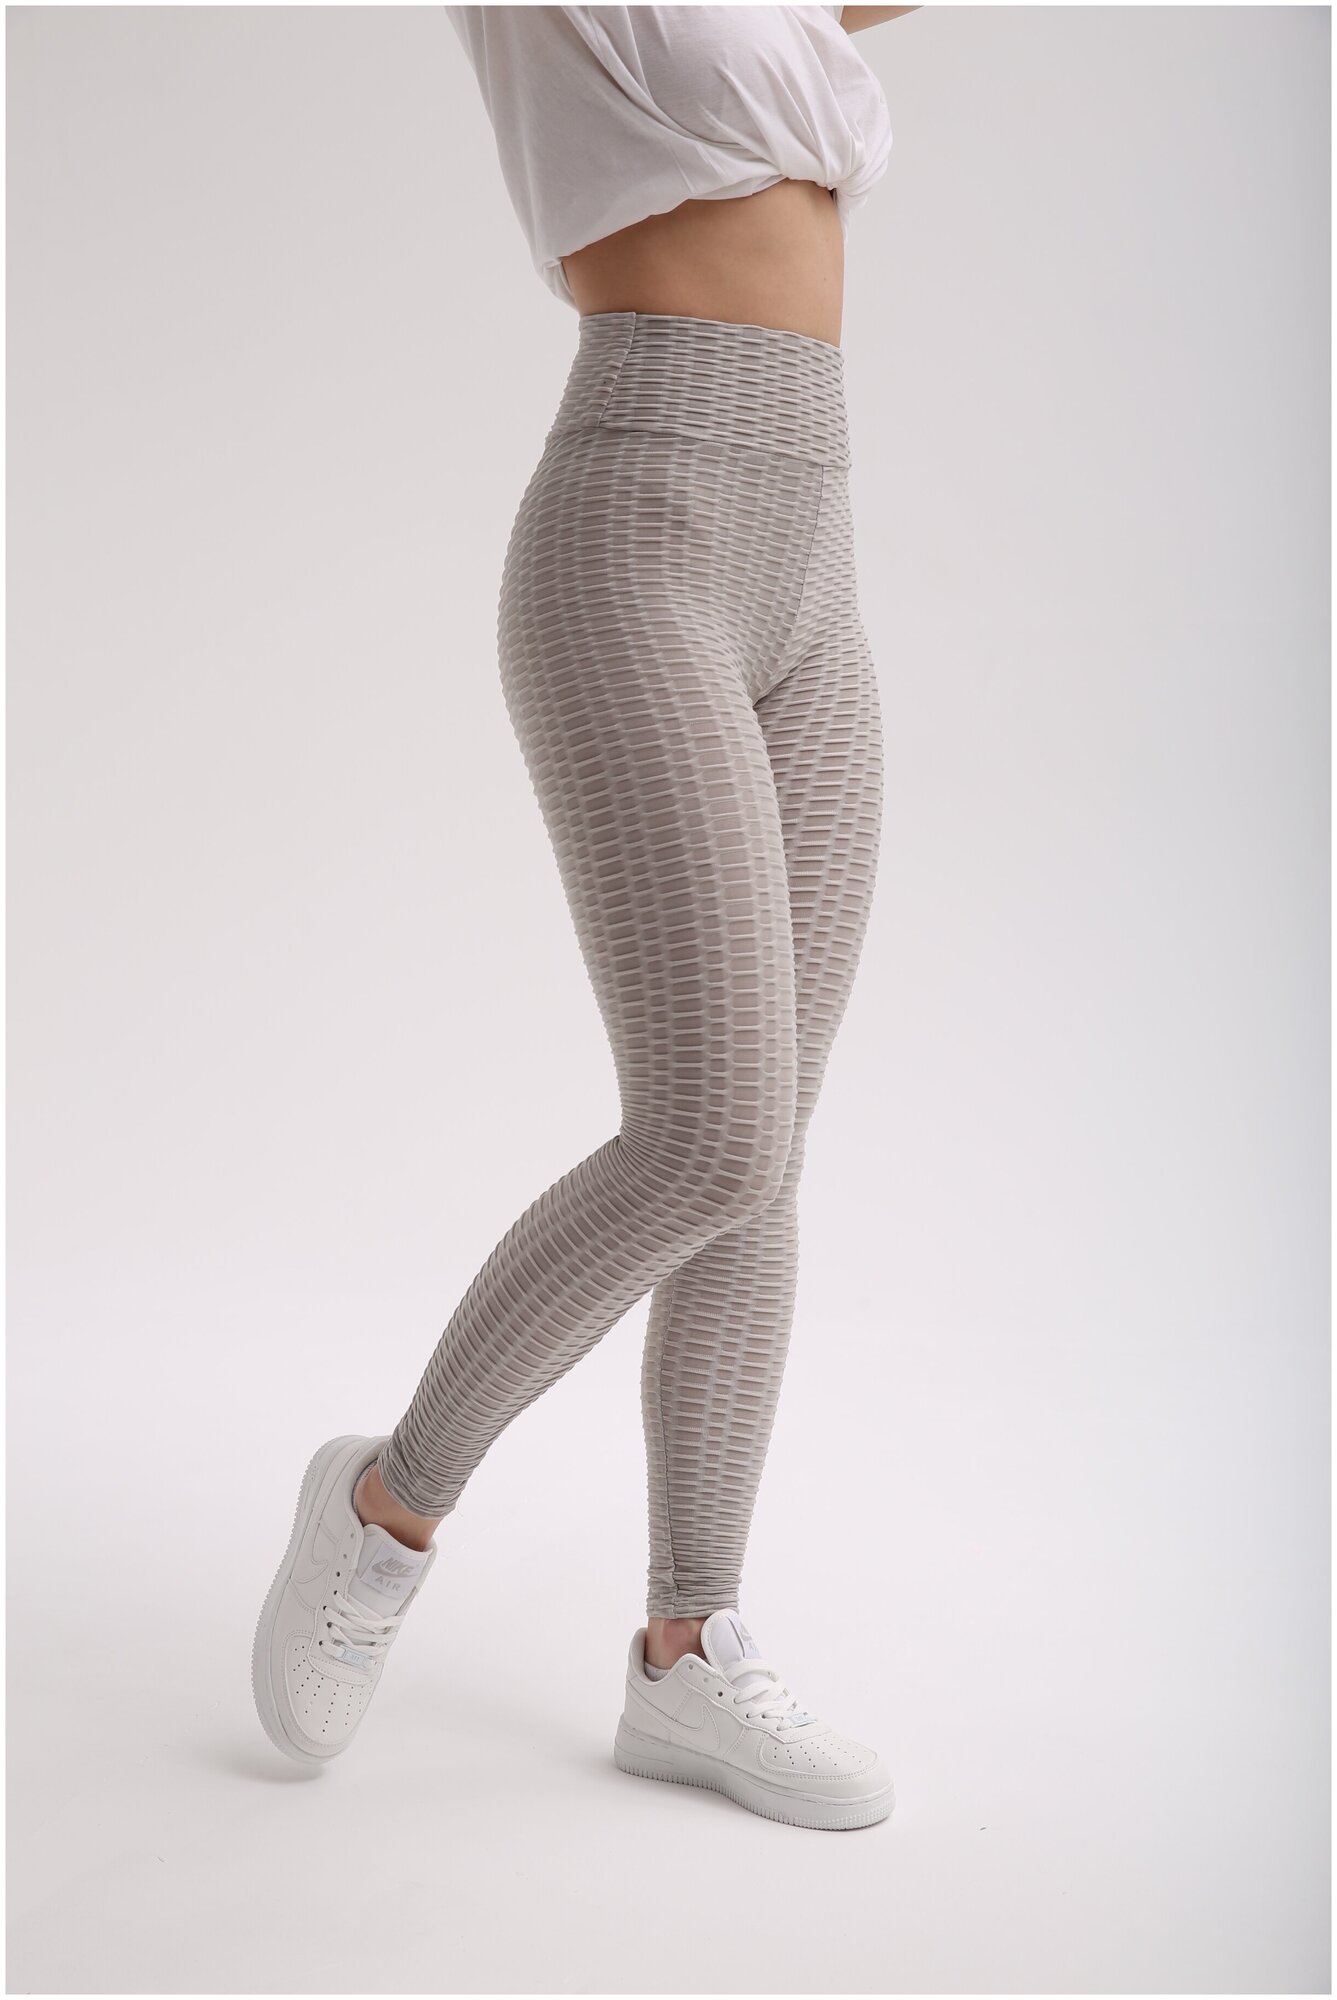 Антицеллюлитные массажные женские леггинсы MyBalance, размер S, цвет серый купить онлайн